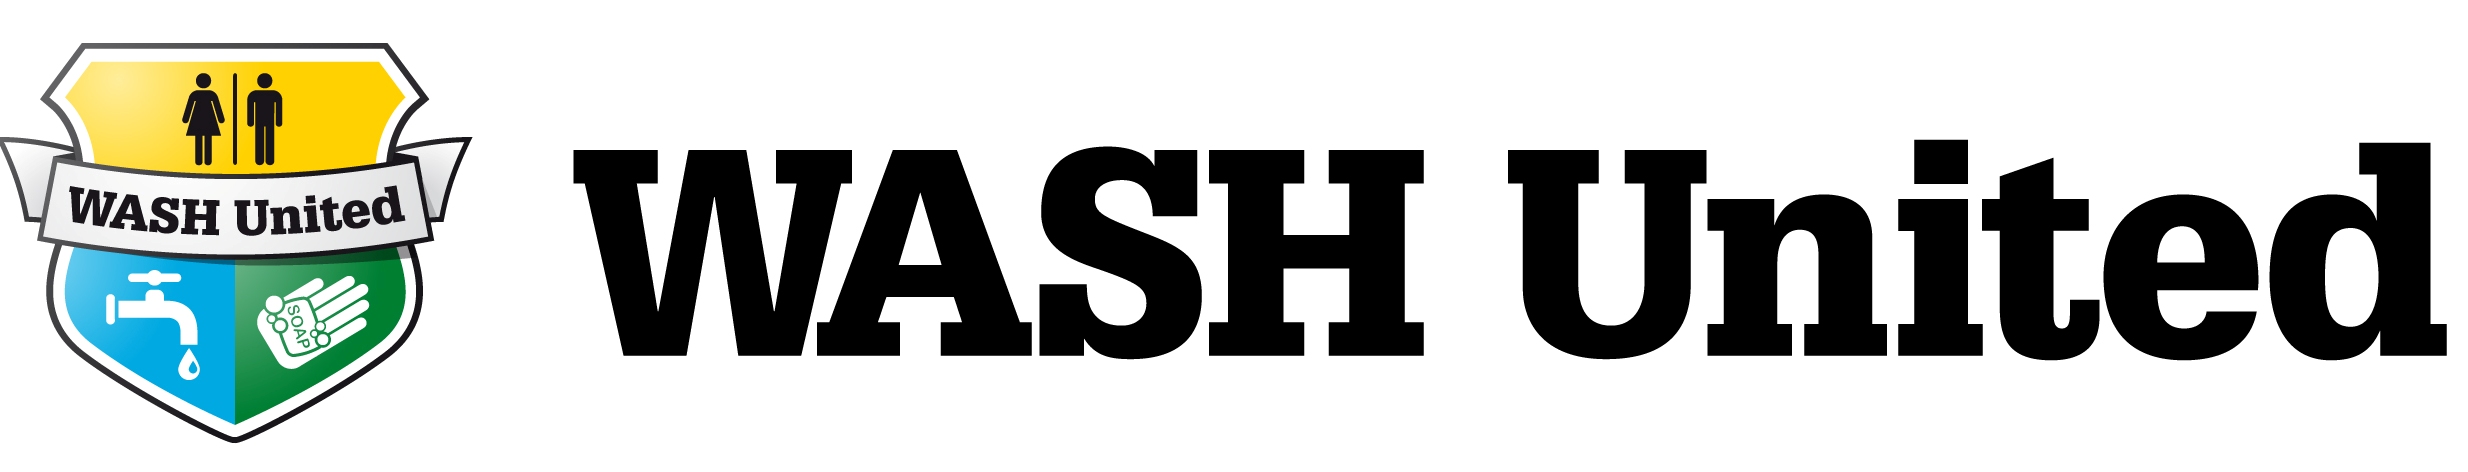 WASH United logo name + image